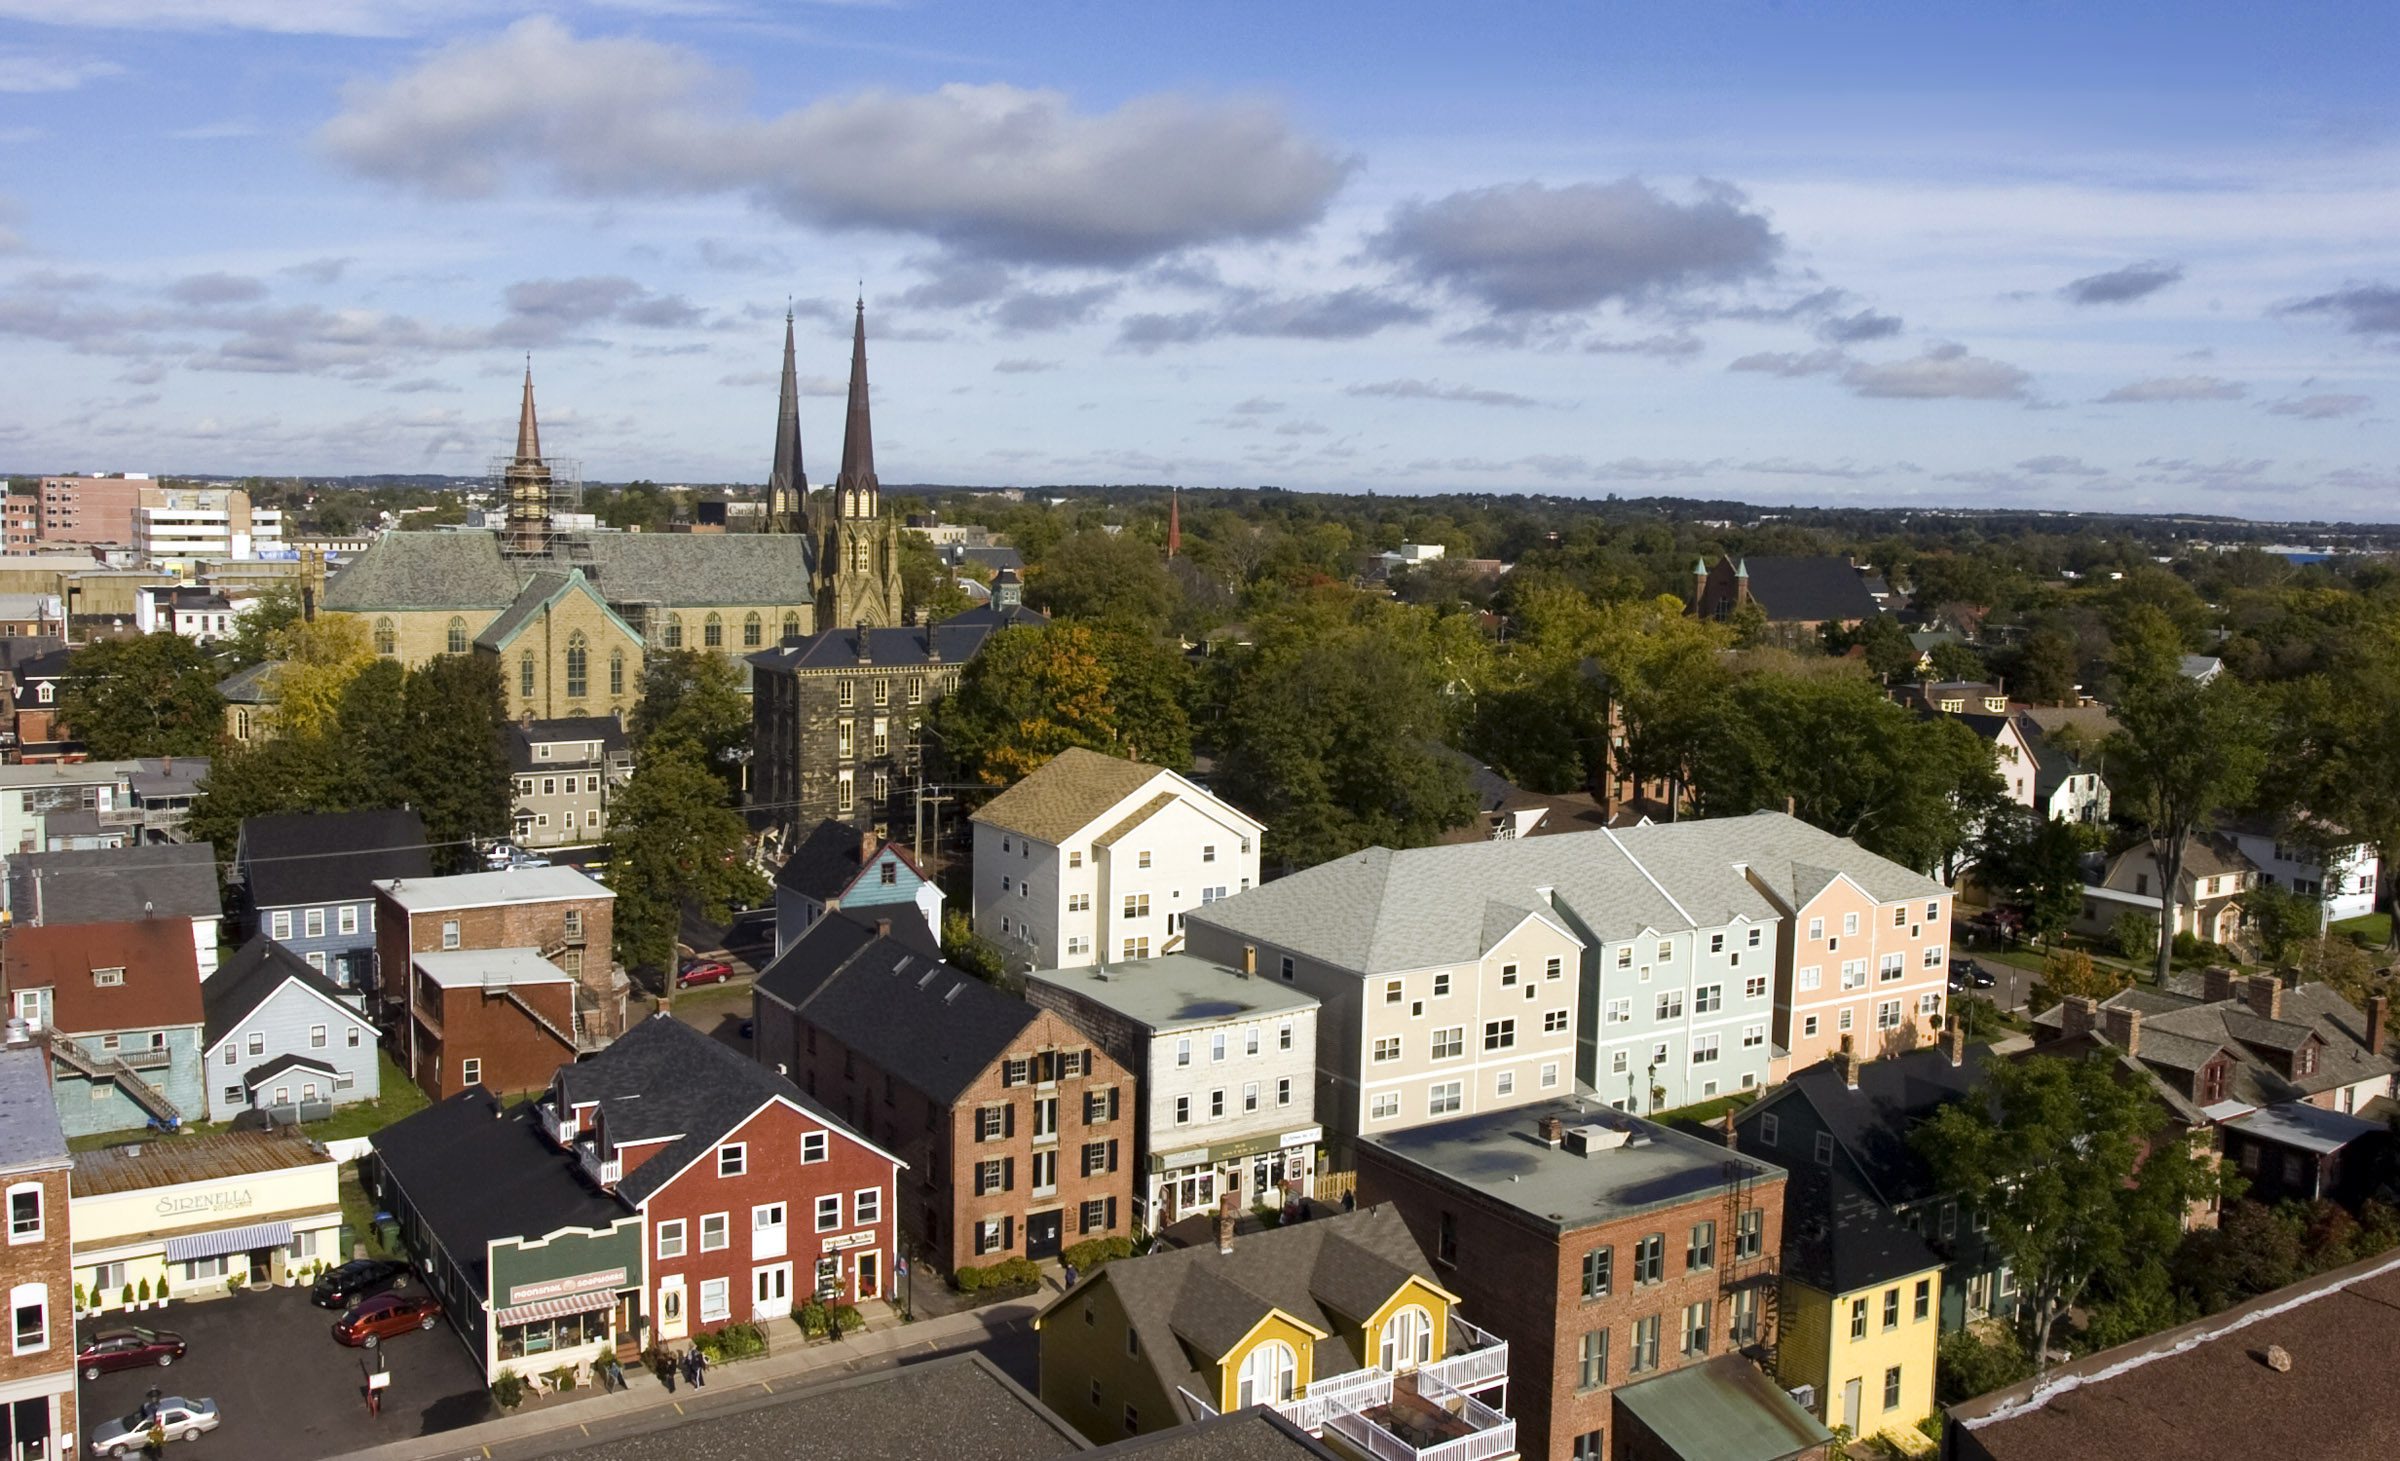  římskokatolická Saint Dunstan je Basilicia dominuje Charlottetown, P. E. I. panorama z této vyhlídky na nábřeží historického města.